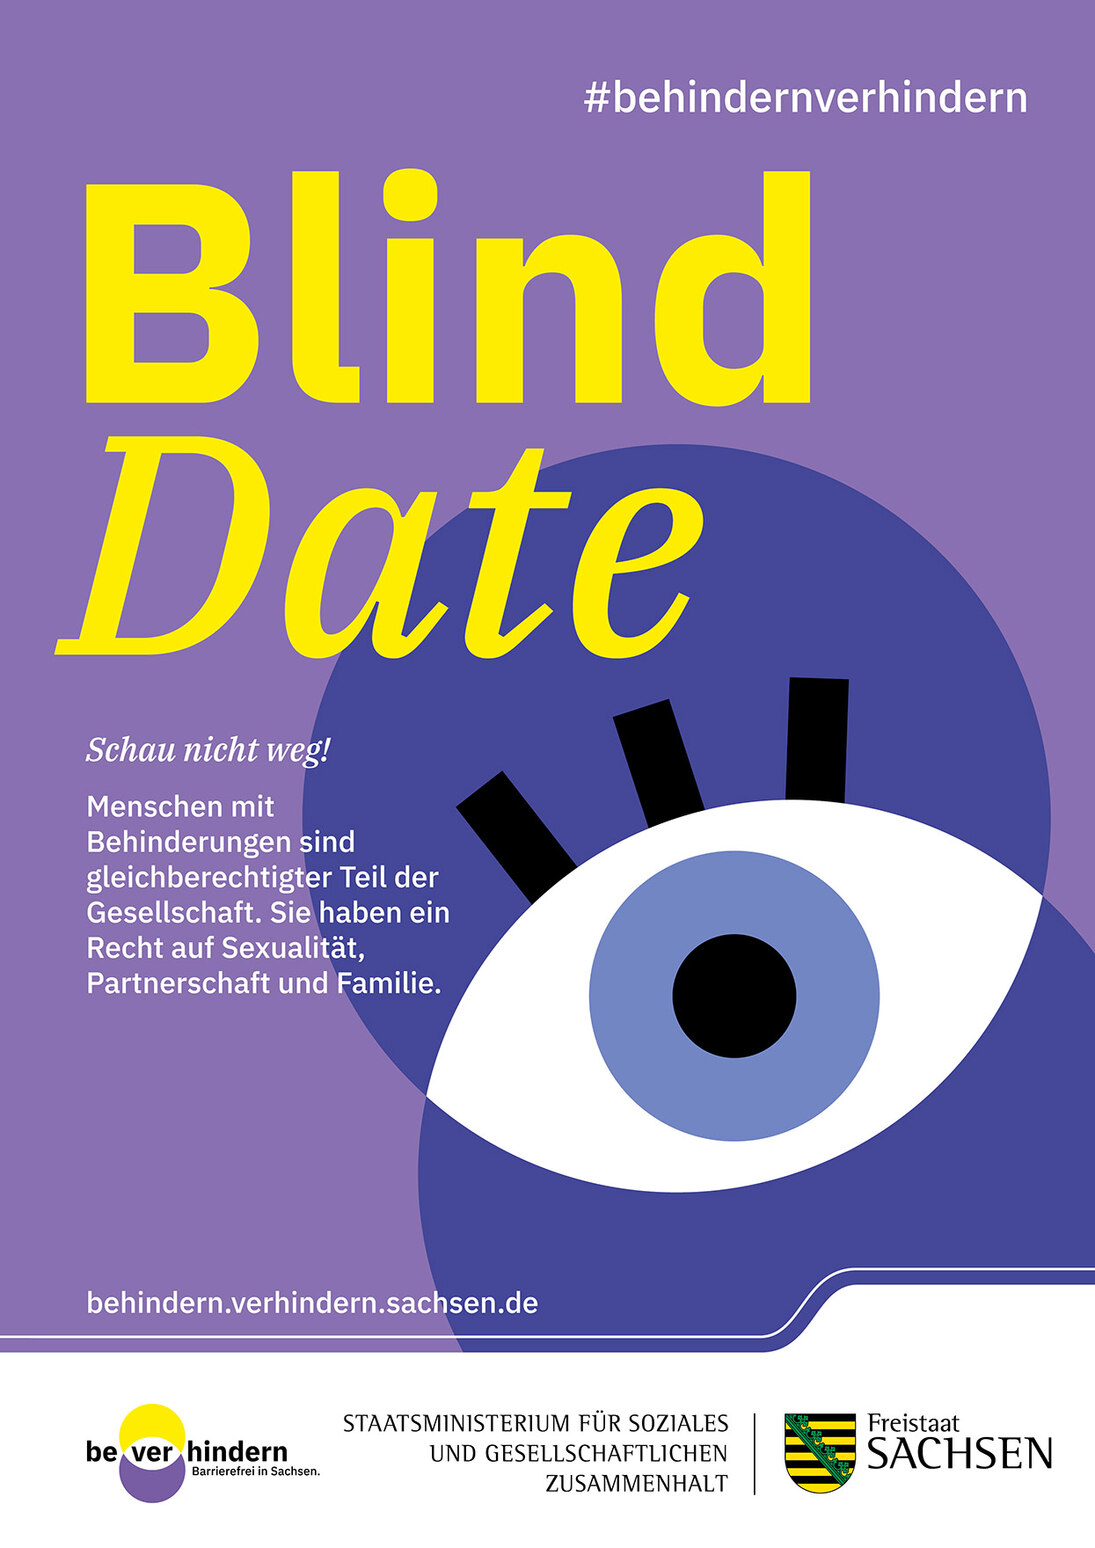 Motiv zur Kampagne. Großes Auge. Aufschrift: Blind Date. Schau nicht weg! Menschen mit Behinderung sind gleichberechtiger Teil der Gesellschaft. Sie haben ein Recht auf Sexualität, Partnerschaft und Familie.